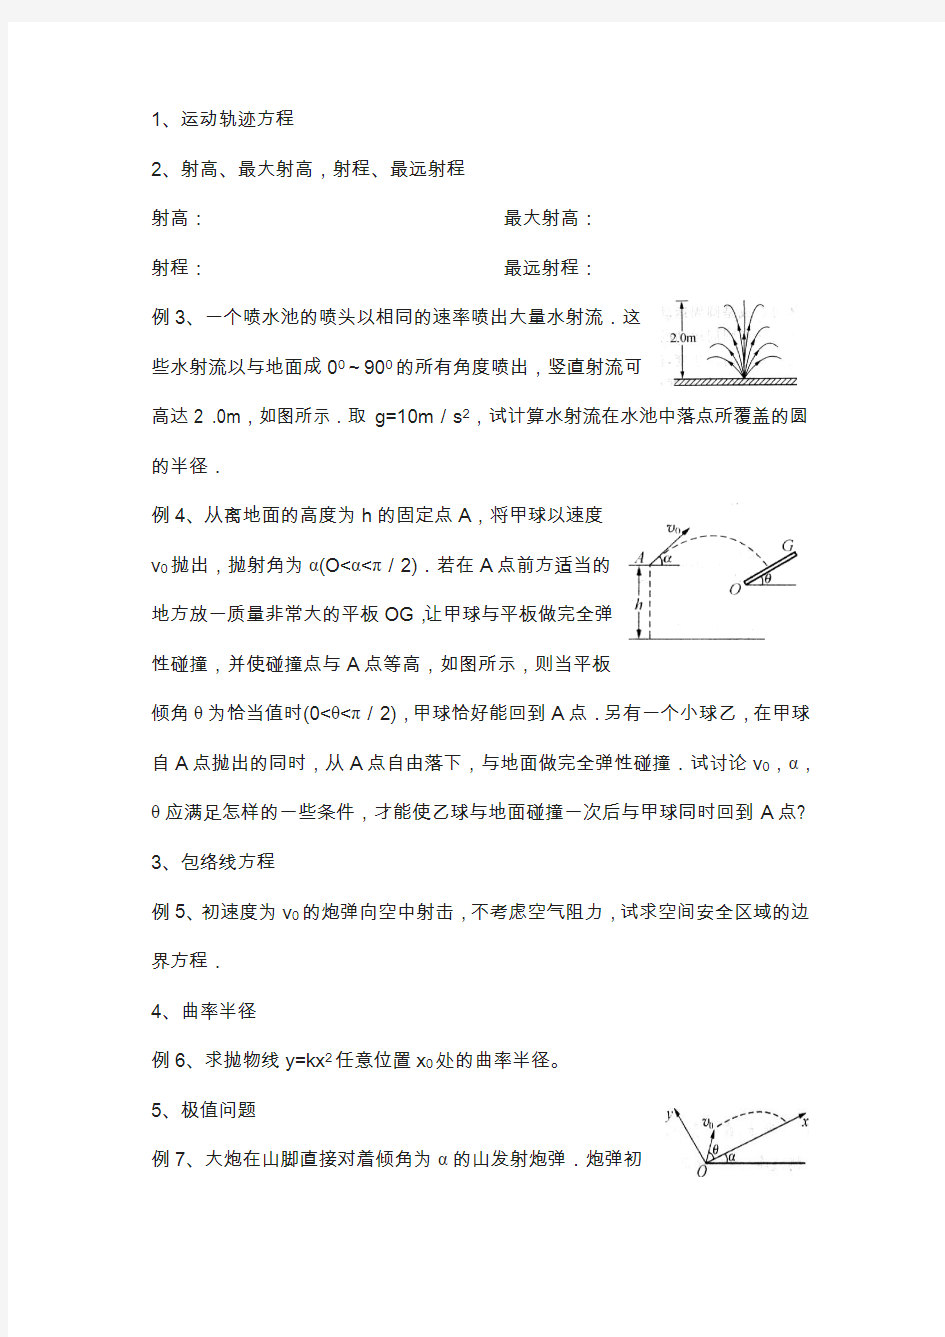 江苏省学物理竞赛讲义-1.3抛体运动